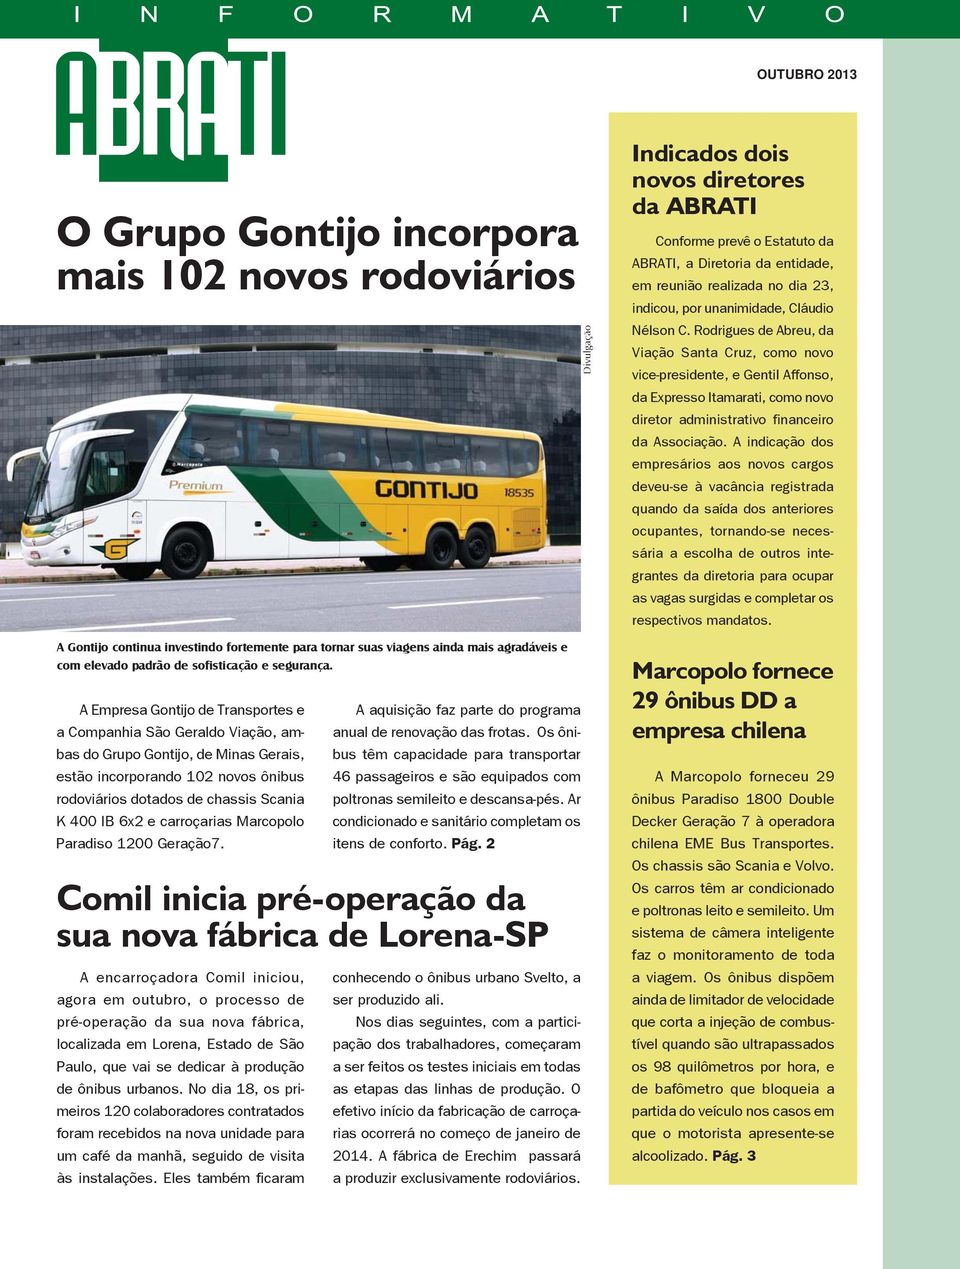 A Empresa Gontijo de Transportes e a Companhia São Geraldo Viação, ambas do Grupo Gontijo, de Minas Gerais, estão incorporando 102 novos ônibus rodoviários dotados de chassis Scania K 400 IB 6x2 e